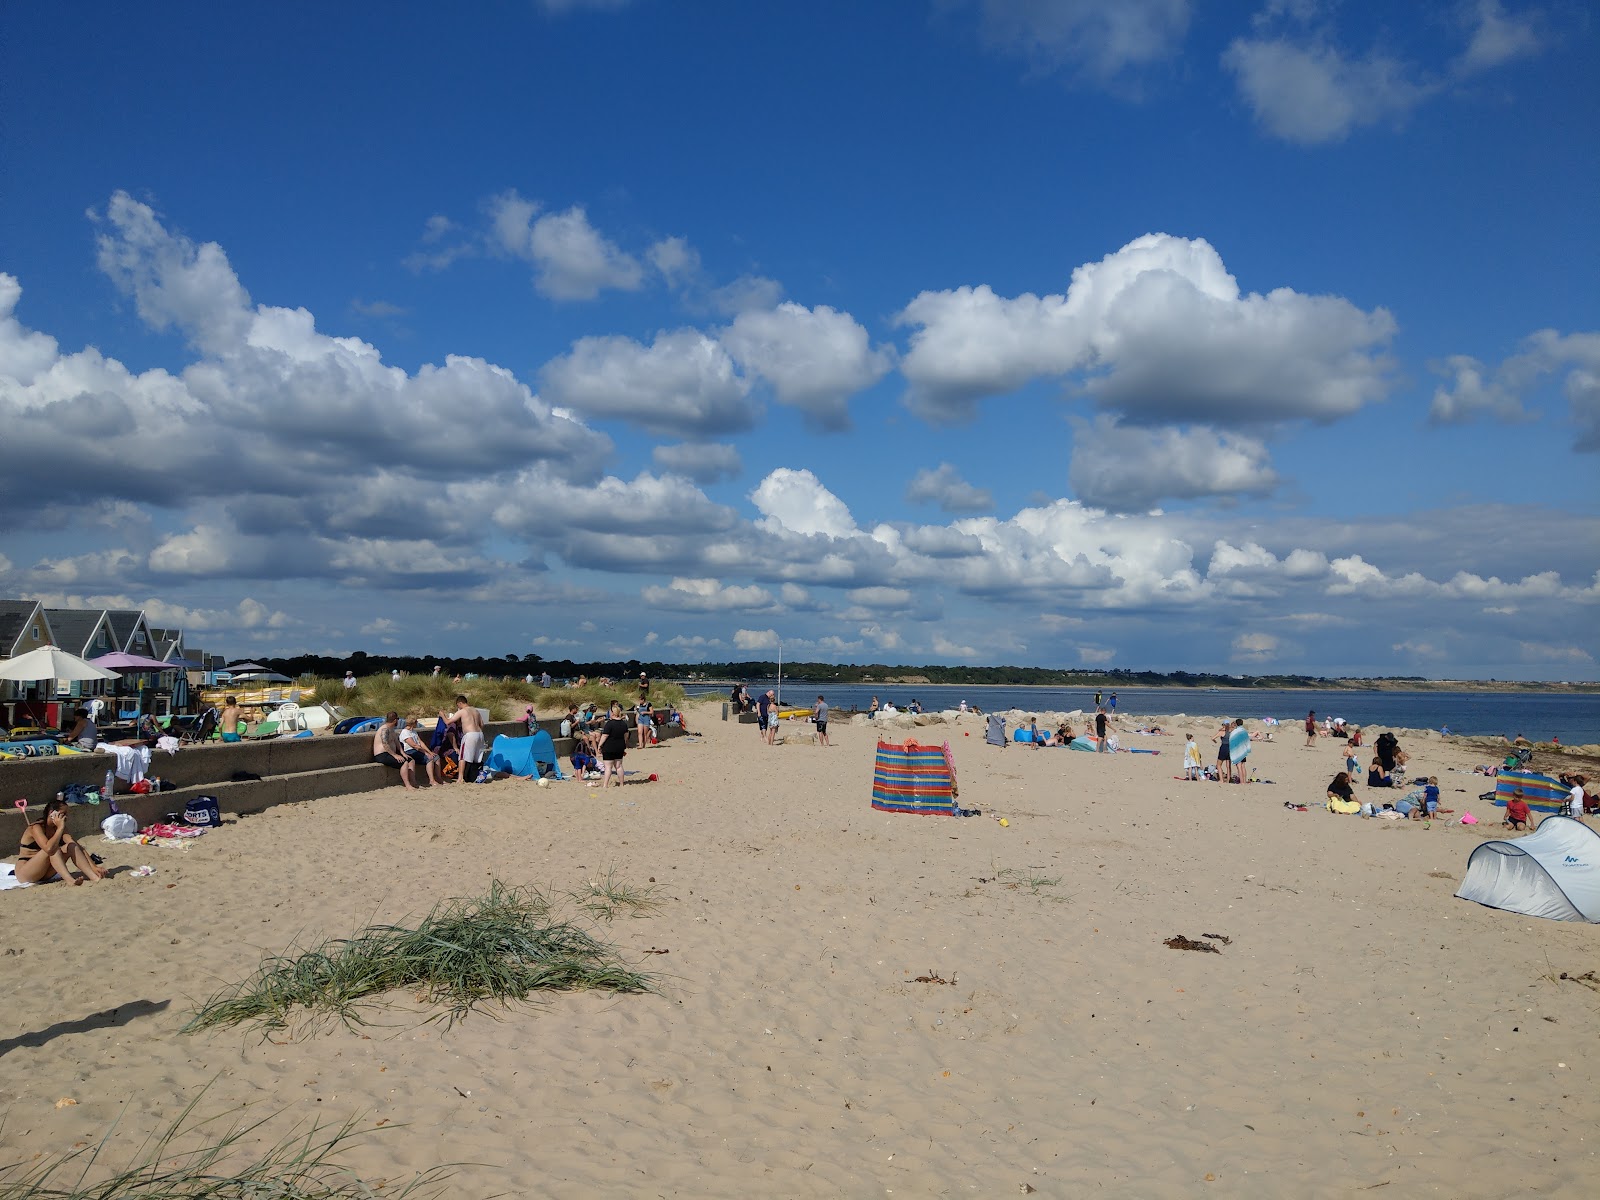 Zdjęcie Plaża Mudeford - popularne miejsce wśród znawców relaksu